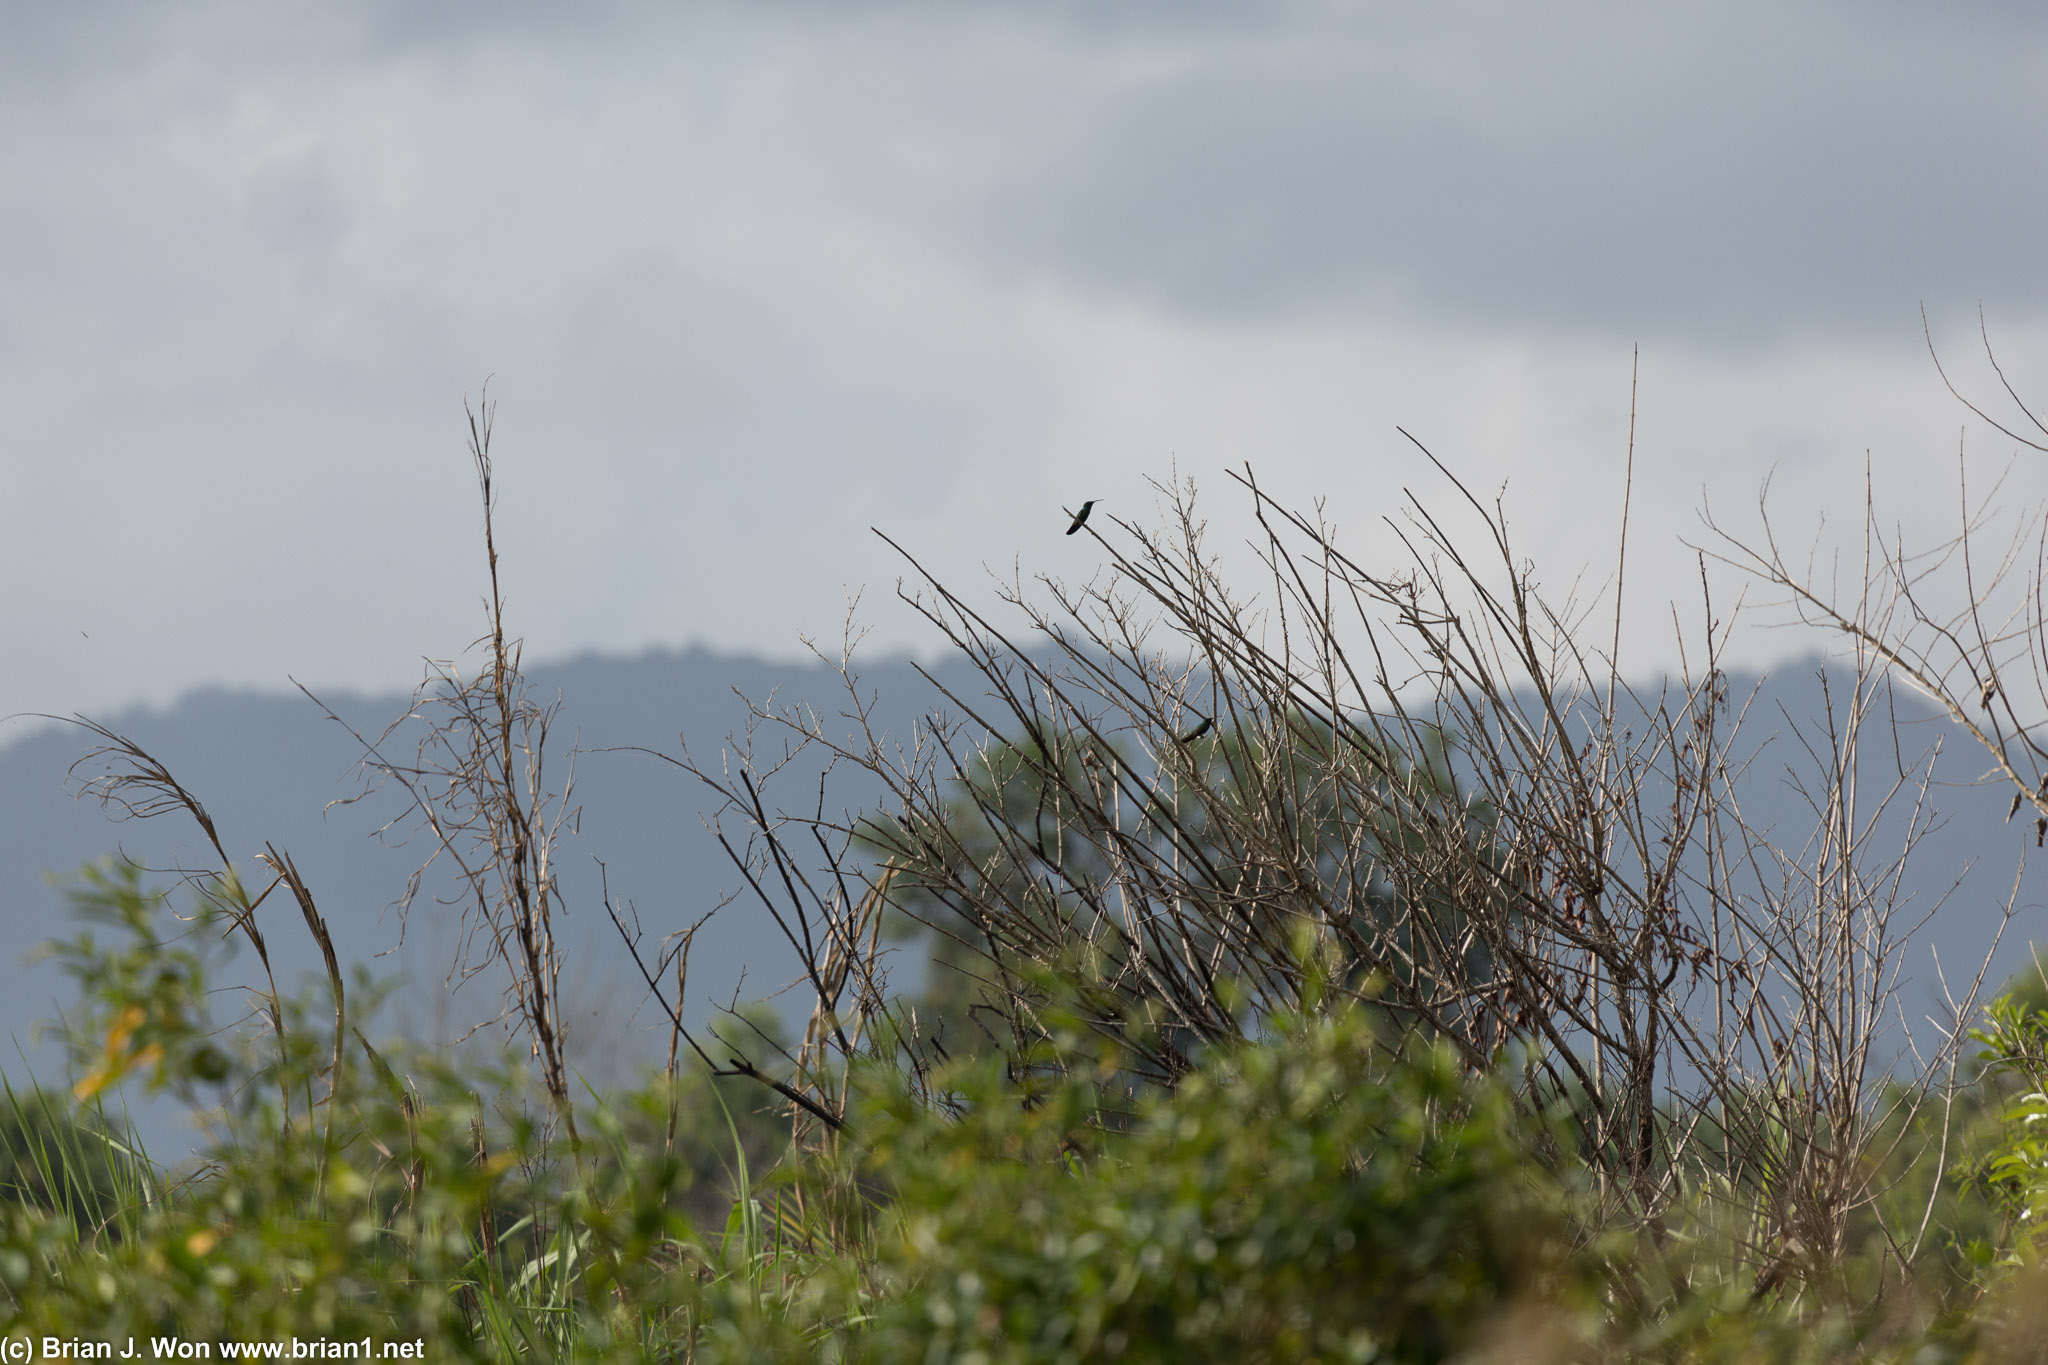 Hummingbird welcoming tourists into Caroni Bird Sanctuary.